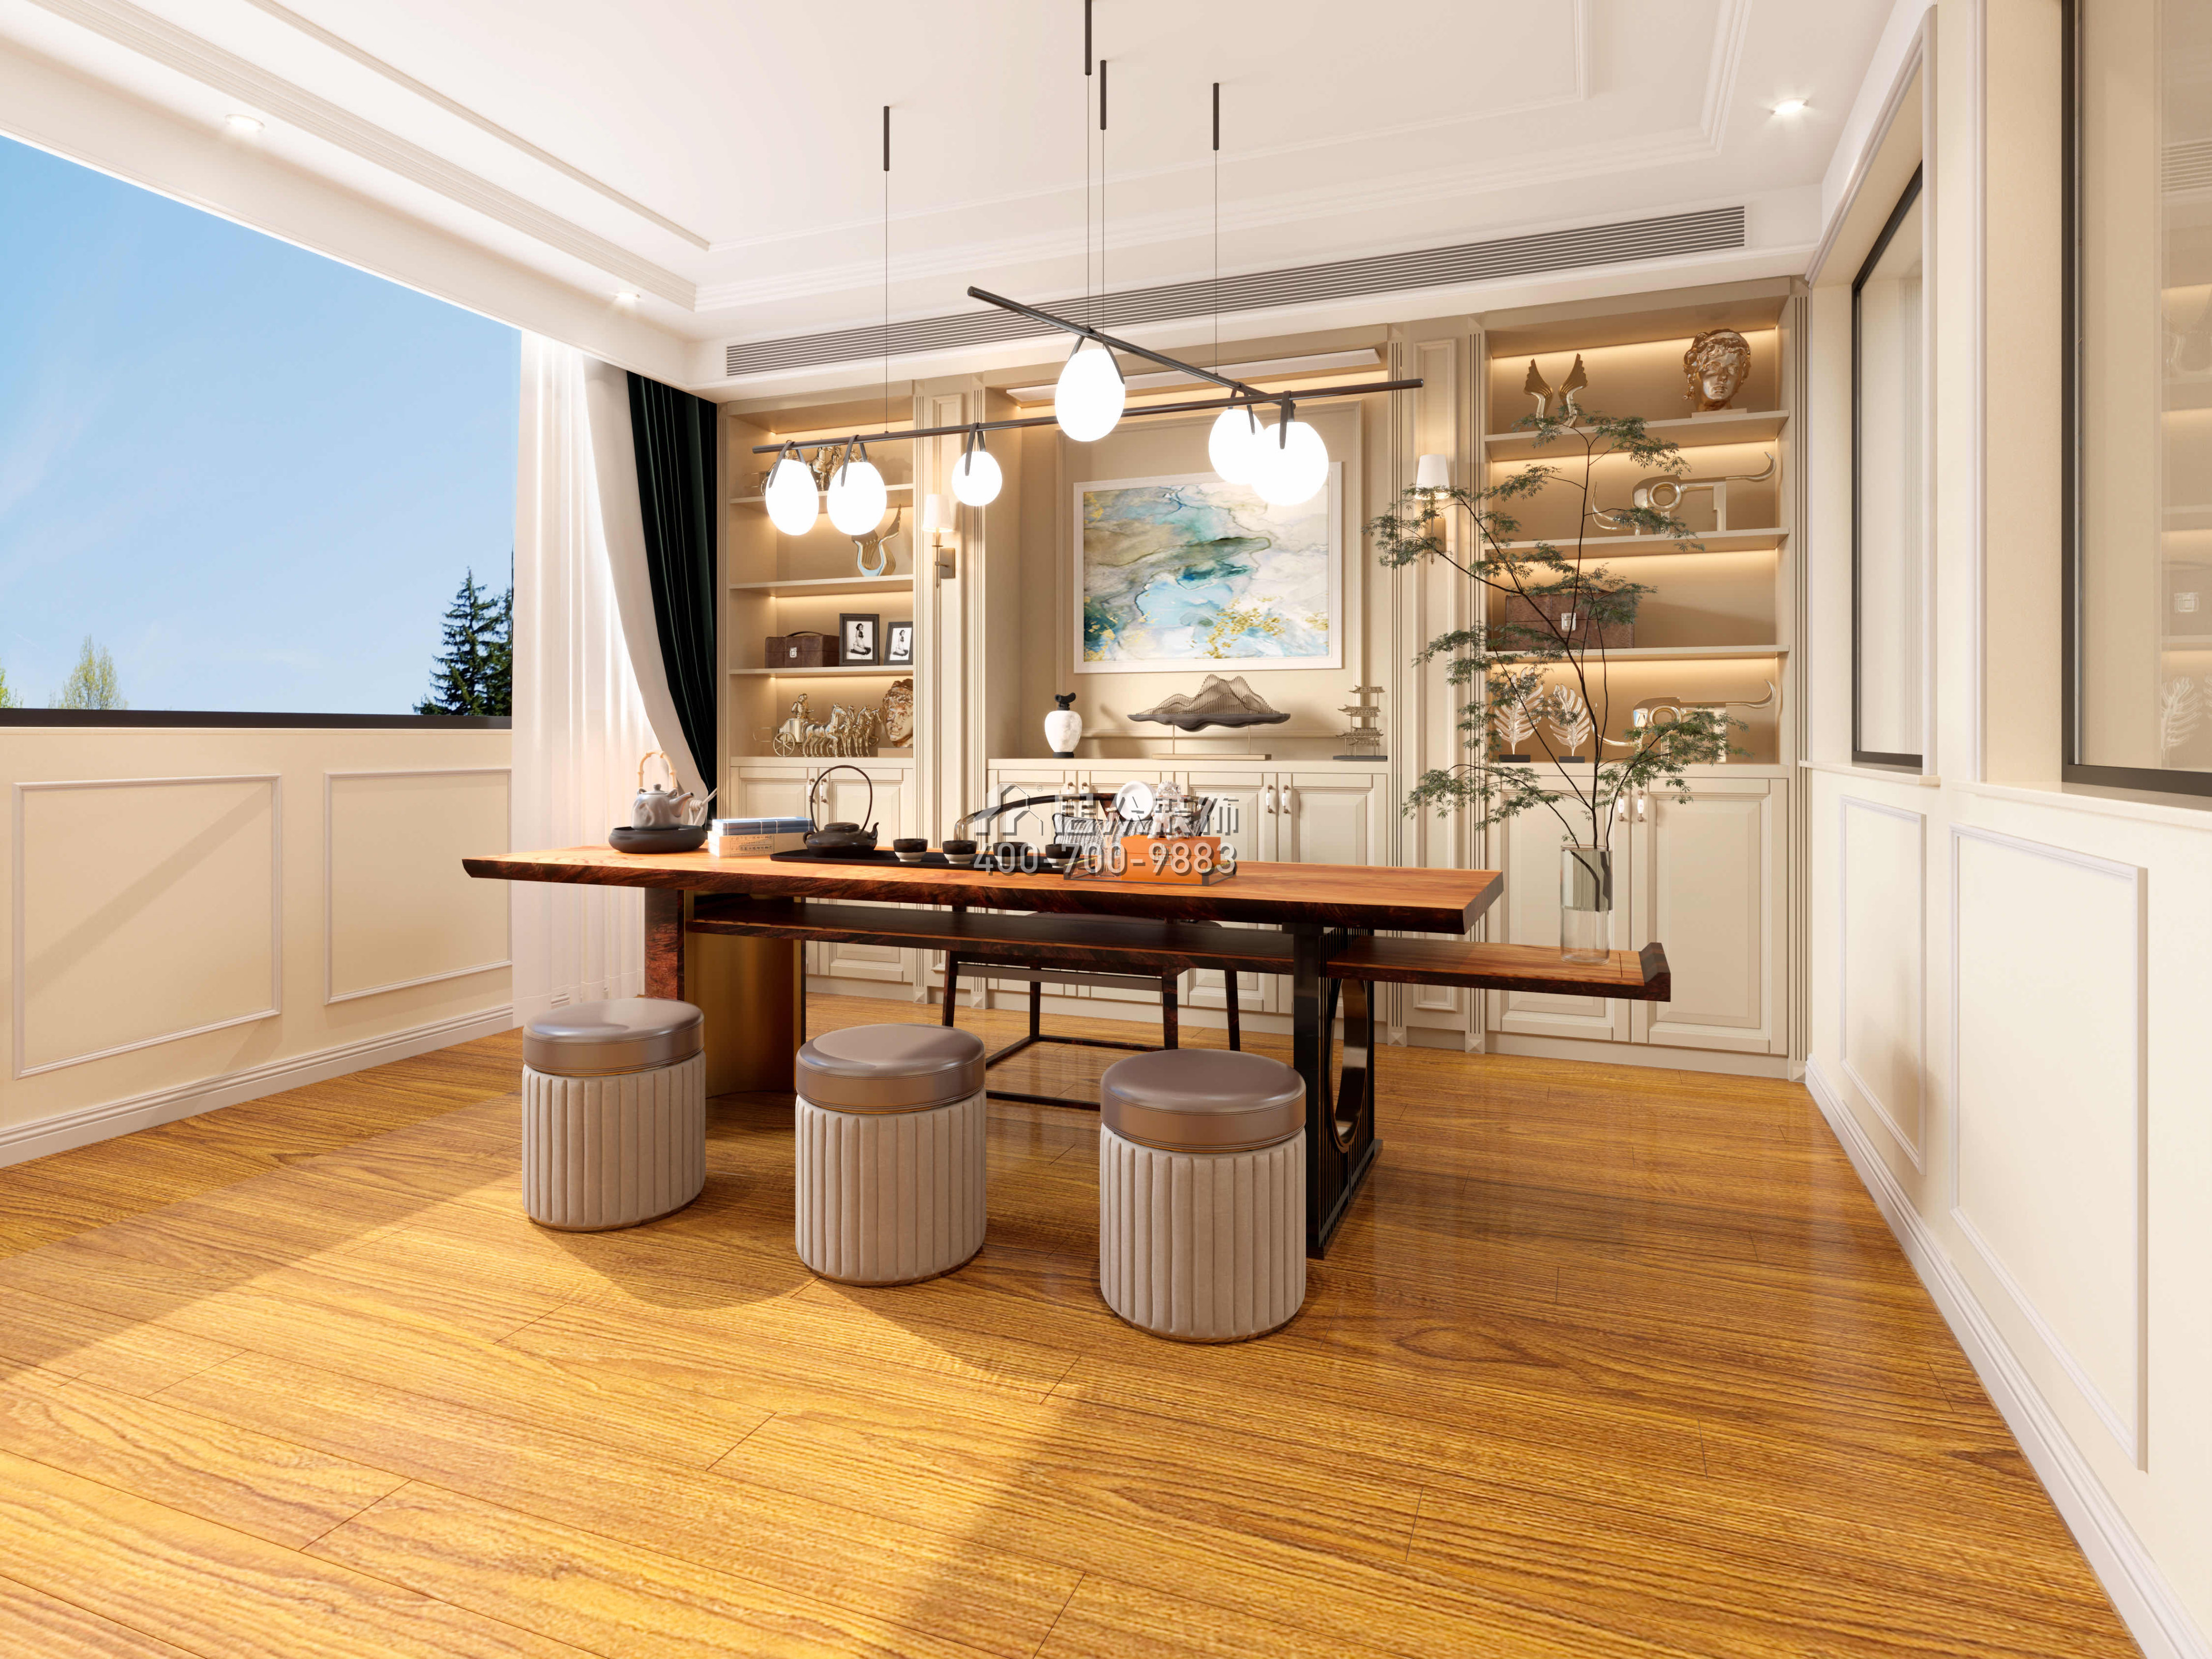 仁山智水780平方米歐式風格別墅戶型茶室裝修效果圖